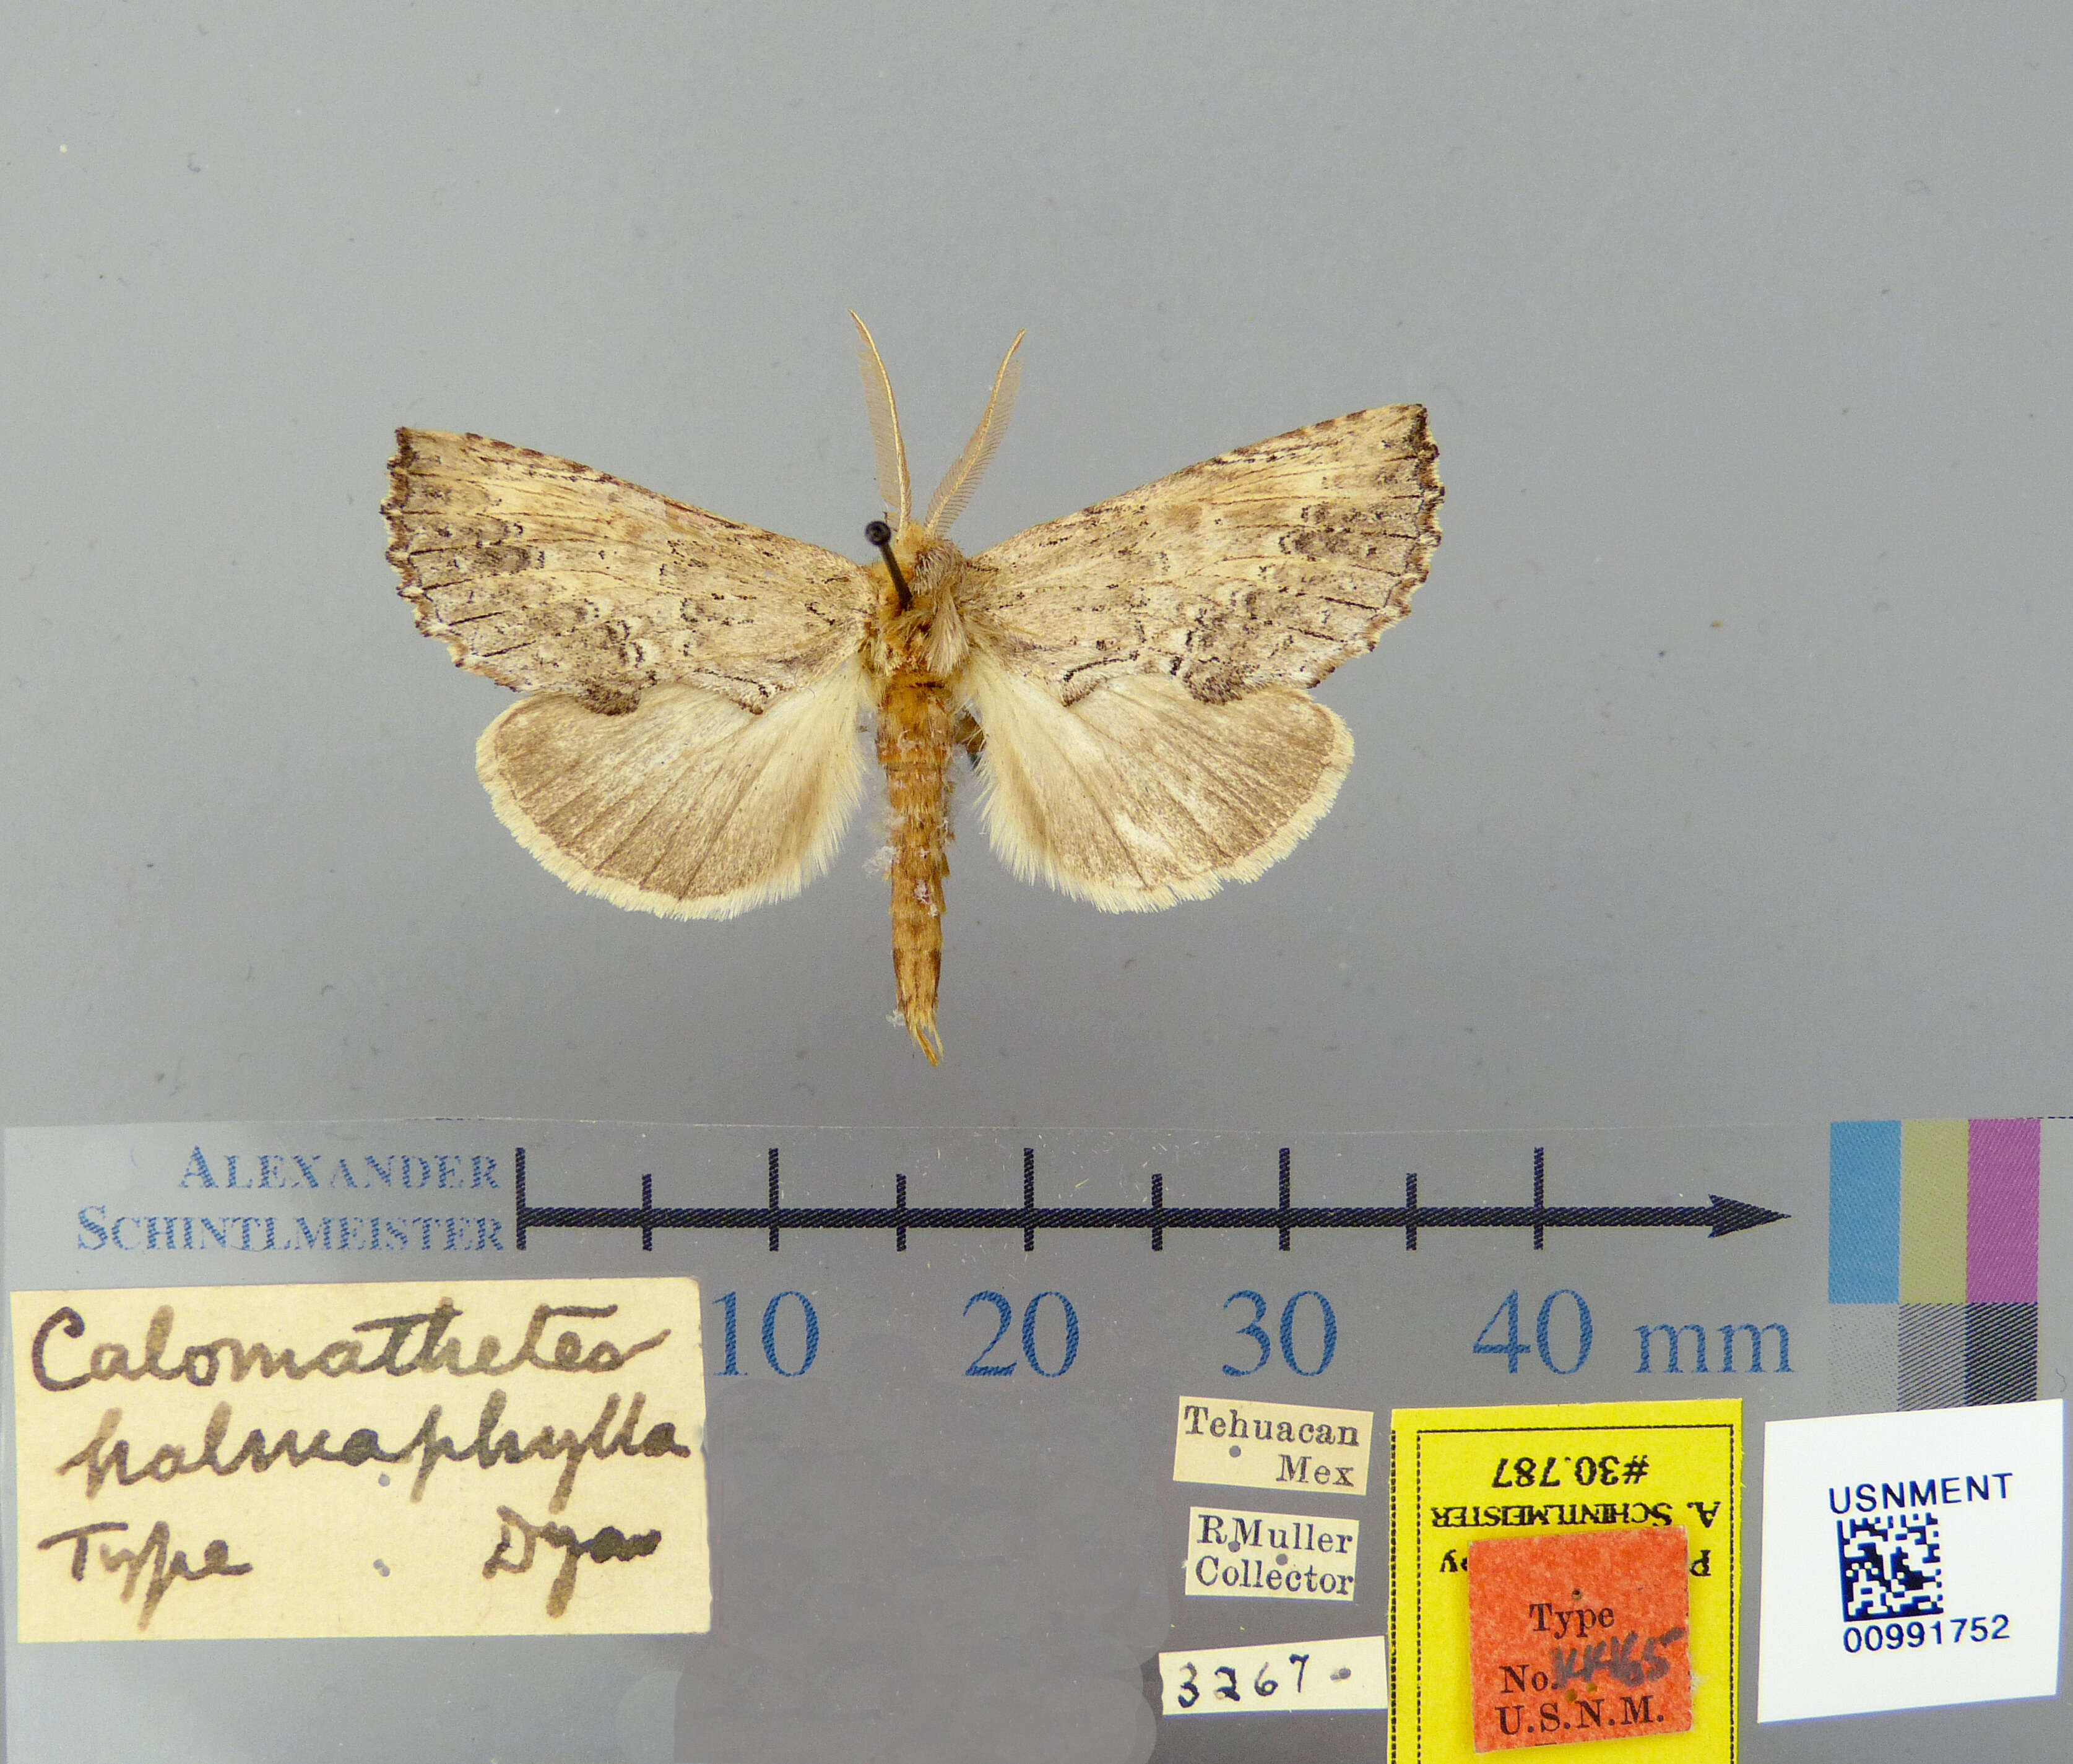 Image of Calomathetes halmaphylla Dyar 1913